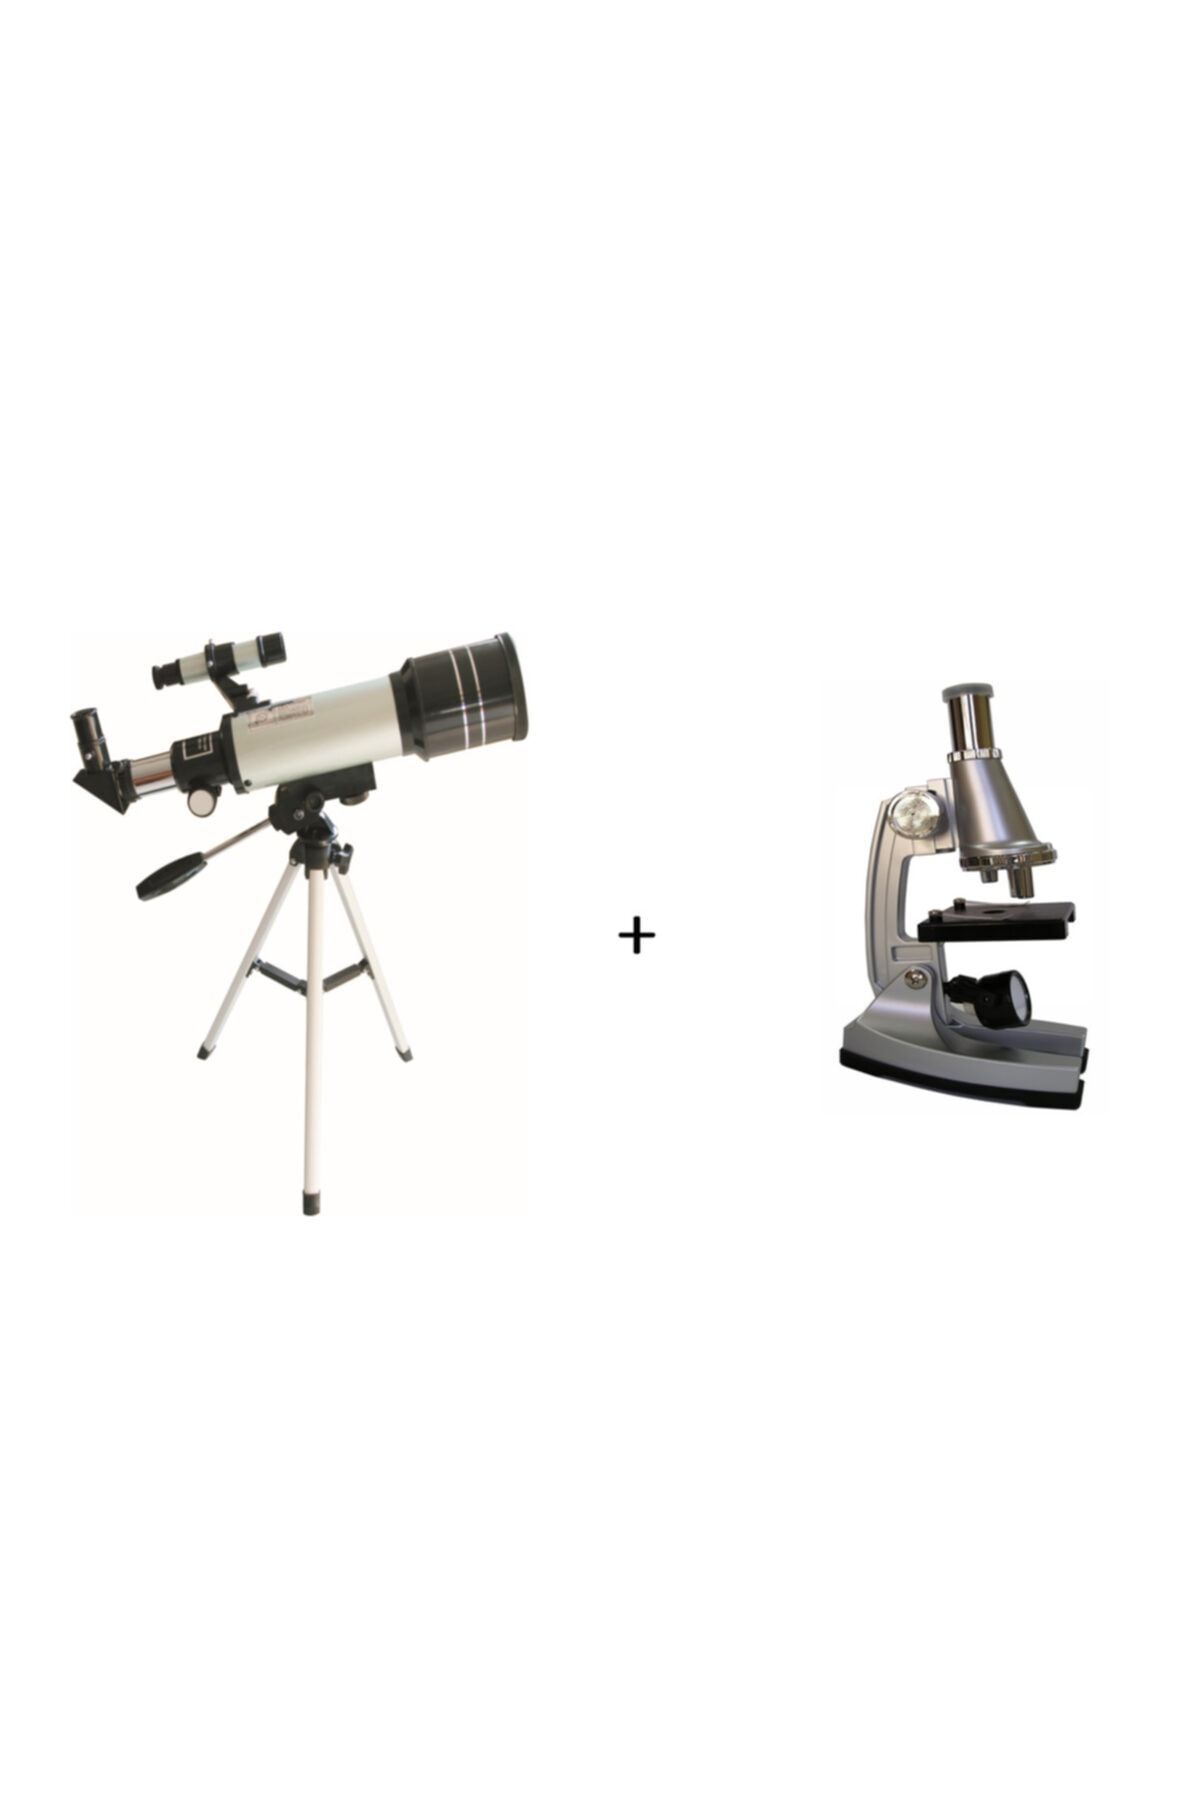 lizer LİZER F30070M Teleskop alana A 450 Mikroskop HEDİYE - Eğitici ve Öğretici Özel ürün